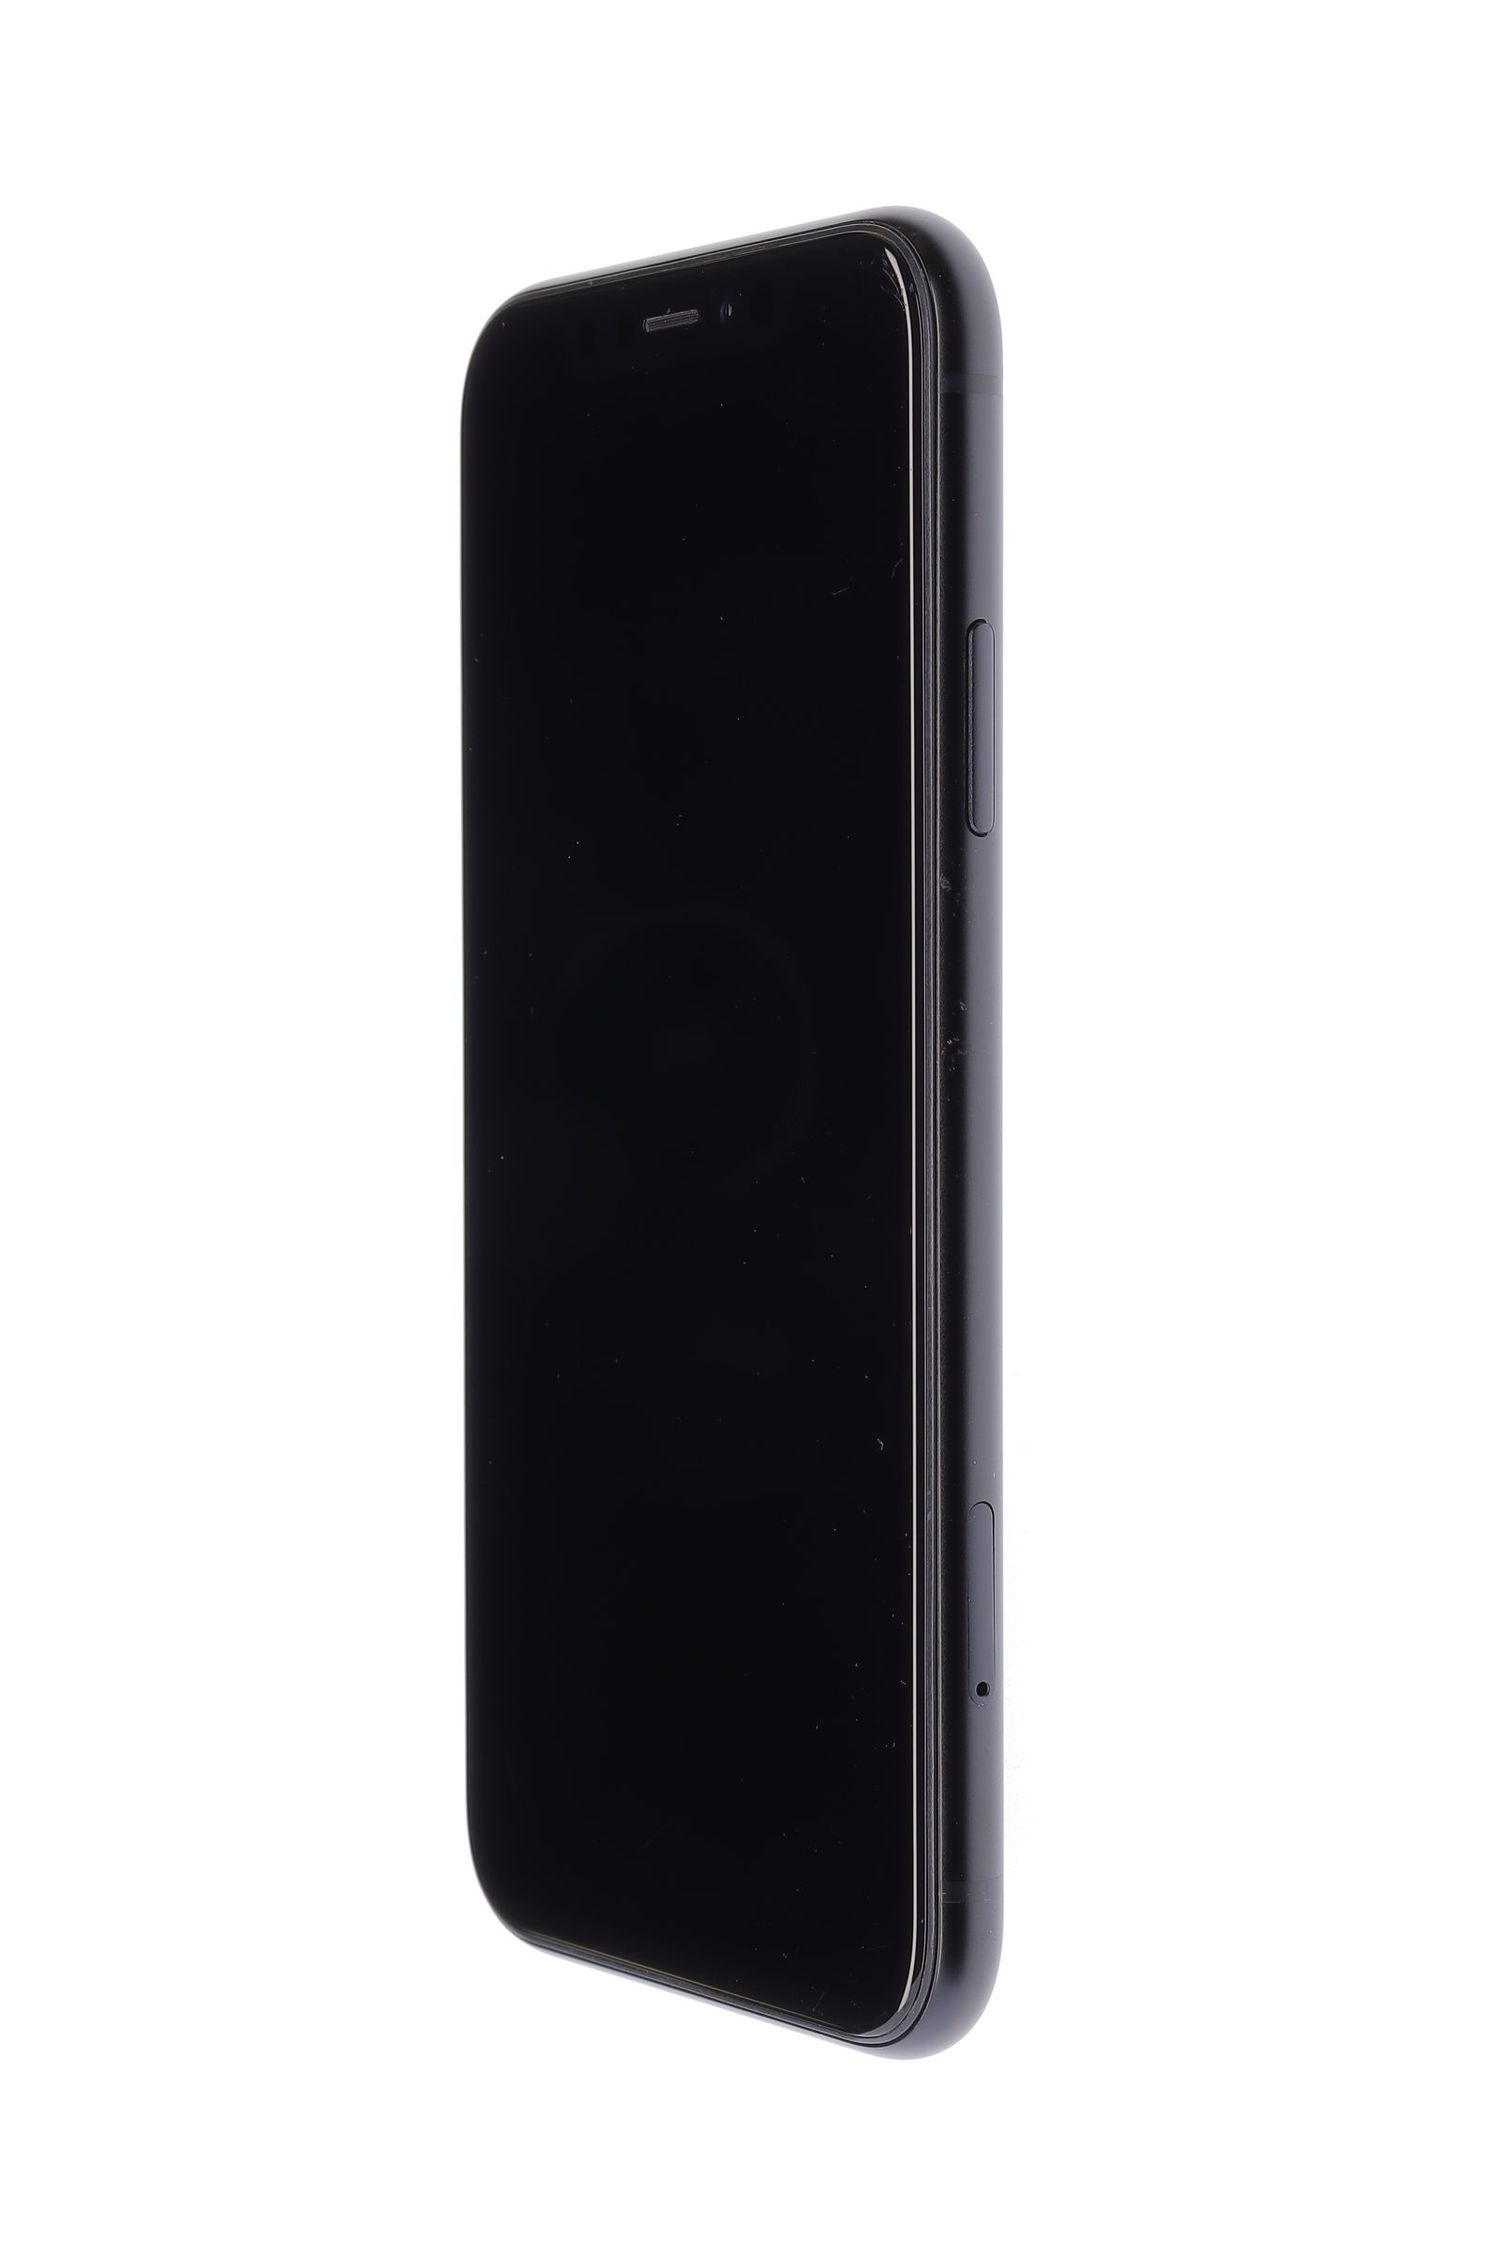 Mobiltelefon Apple iPhone XR, Black, 128 GB, Foarte Bun